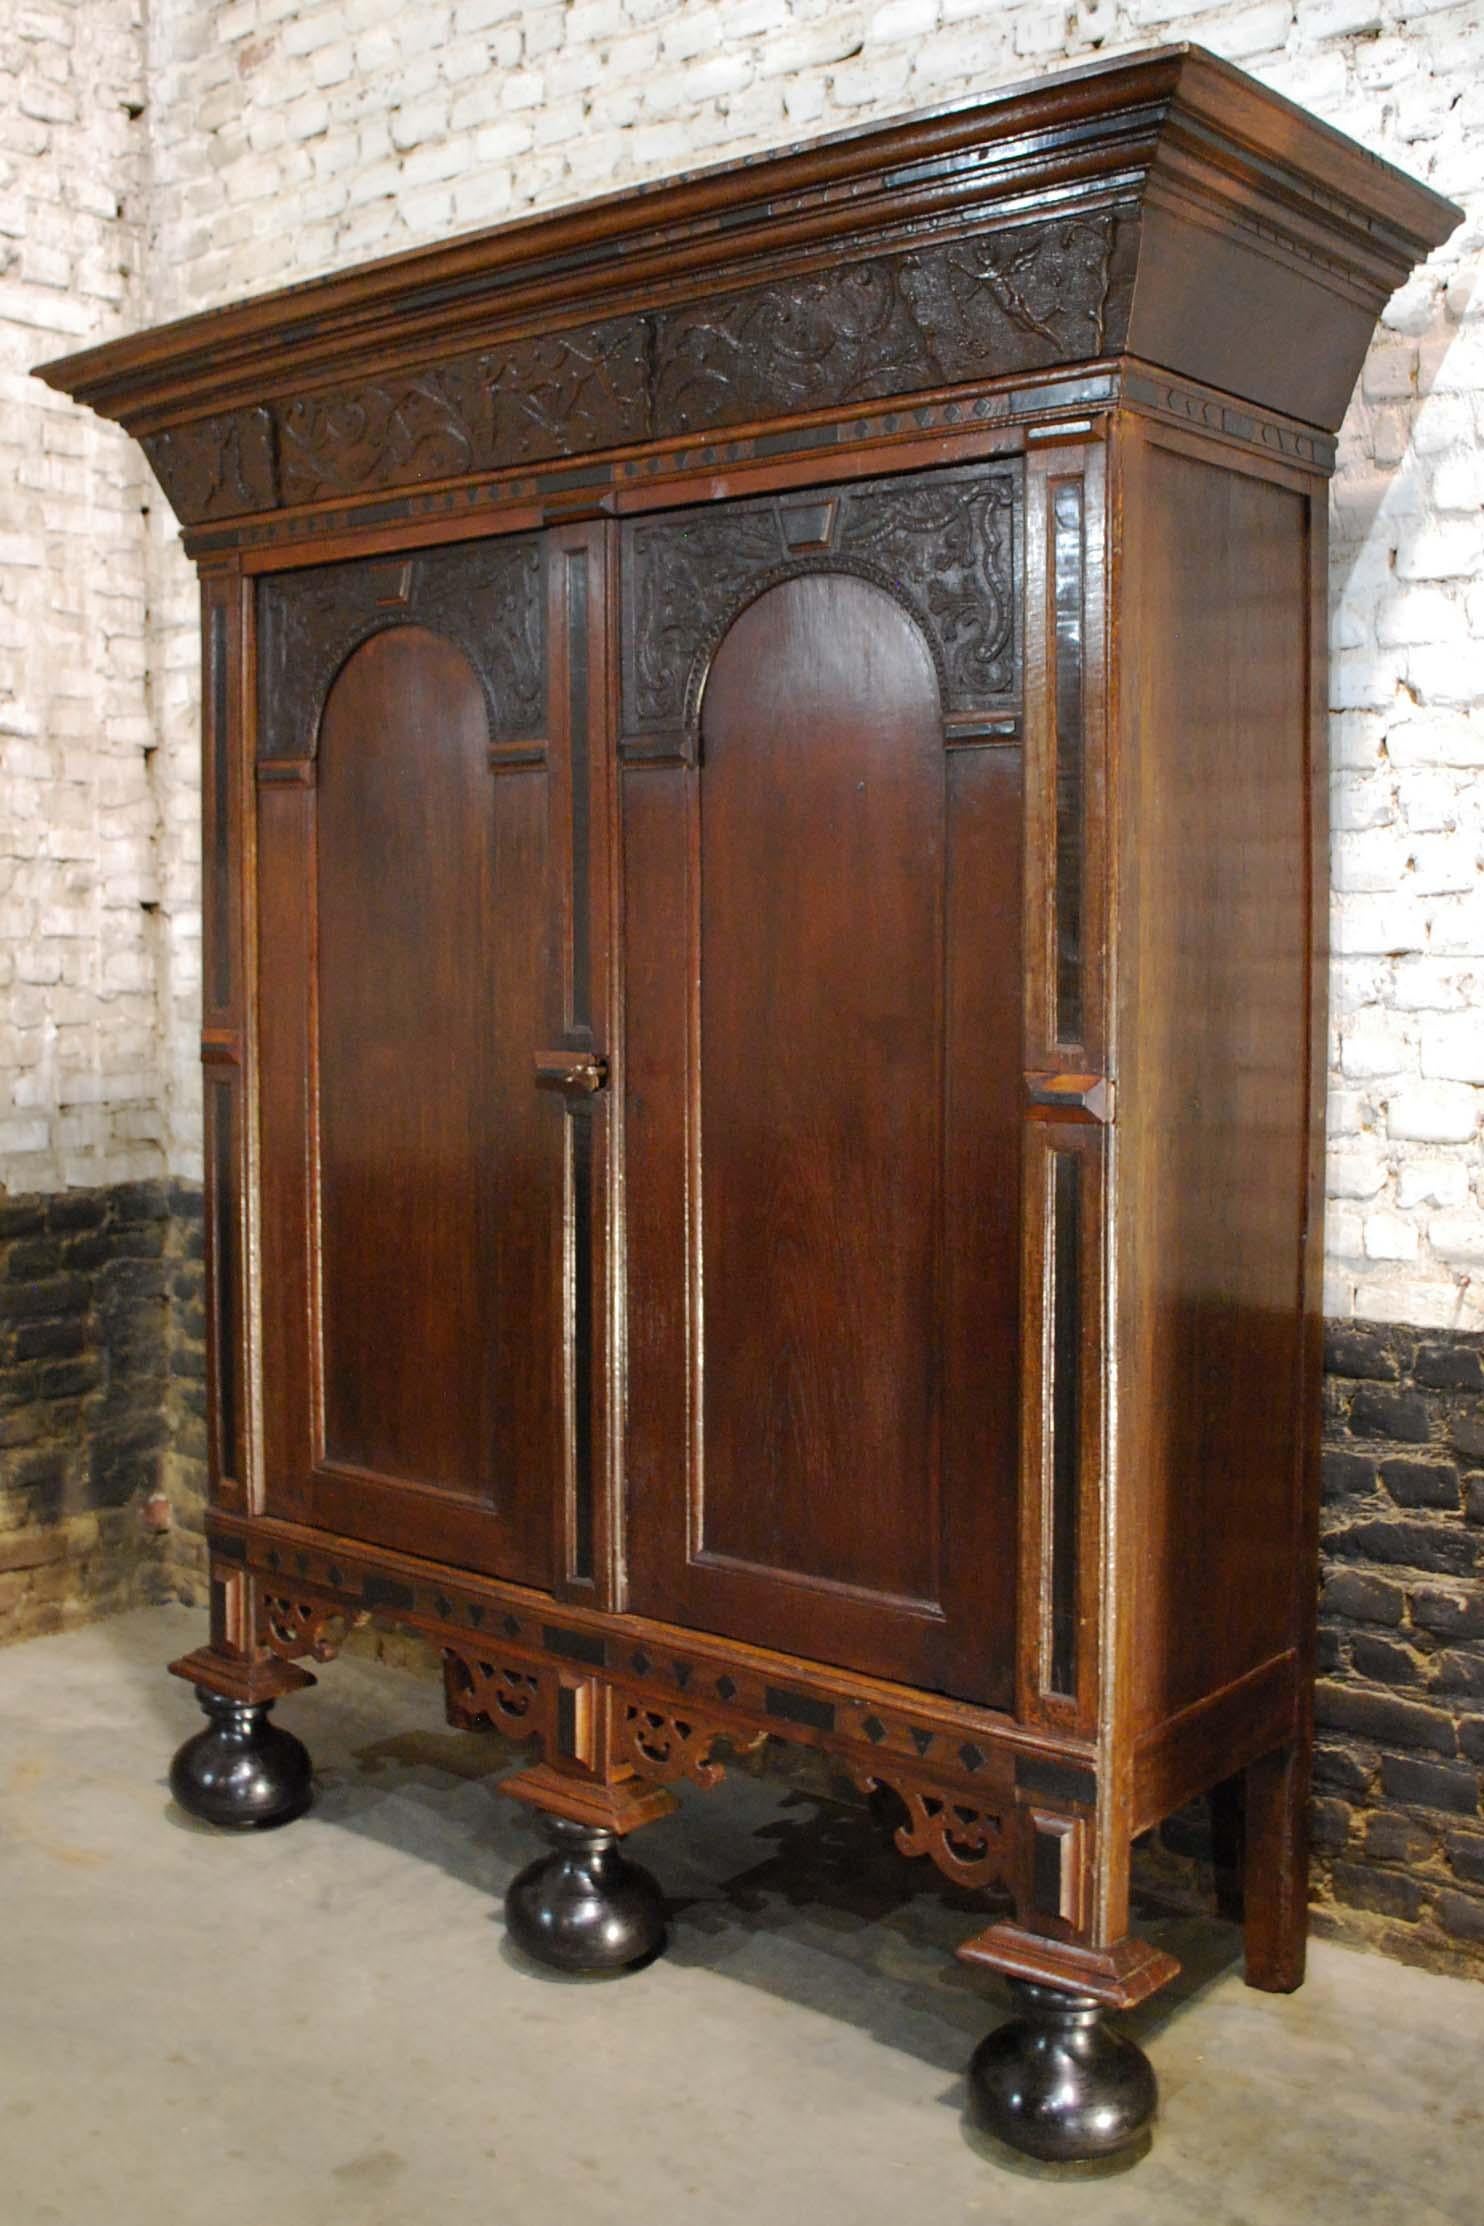 Belle et rare armoire à deux portes de la Renaissance hollandaise. Ce cabinet est issu d'une époque de l'histoire néerlandaise que l'on appelle 